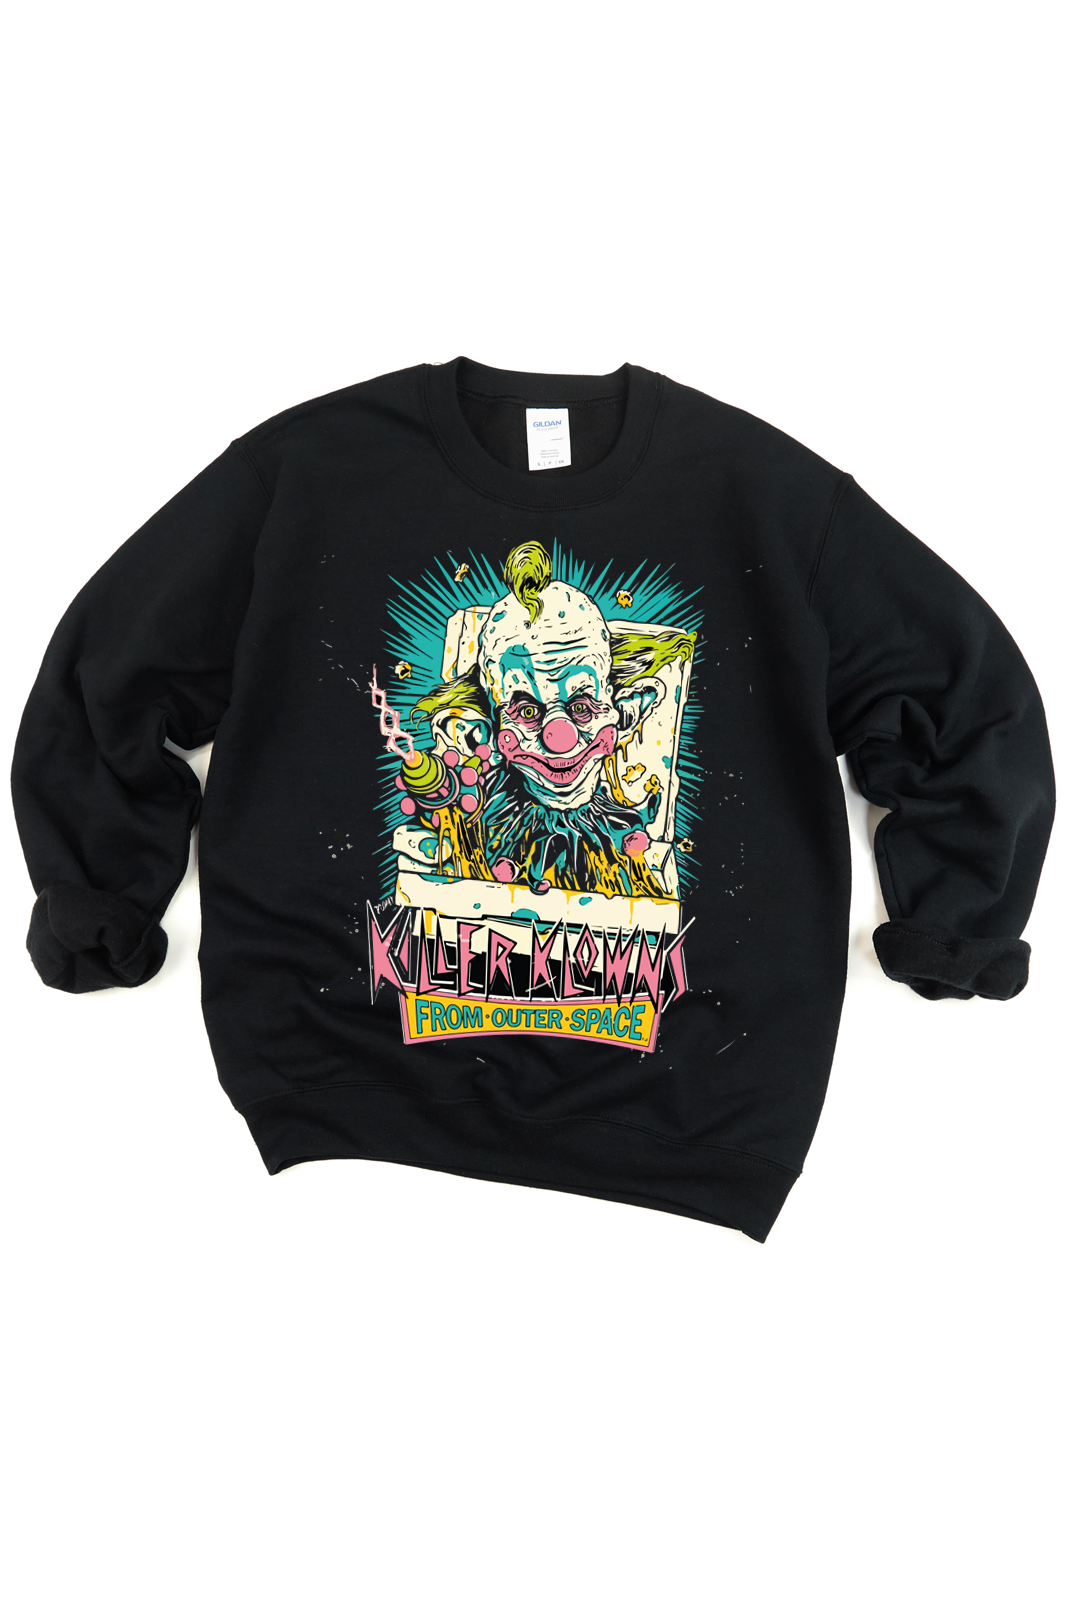 Killer Klowns Tee/Sweatshirt